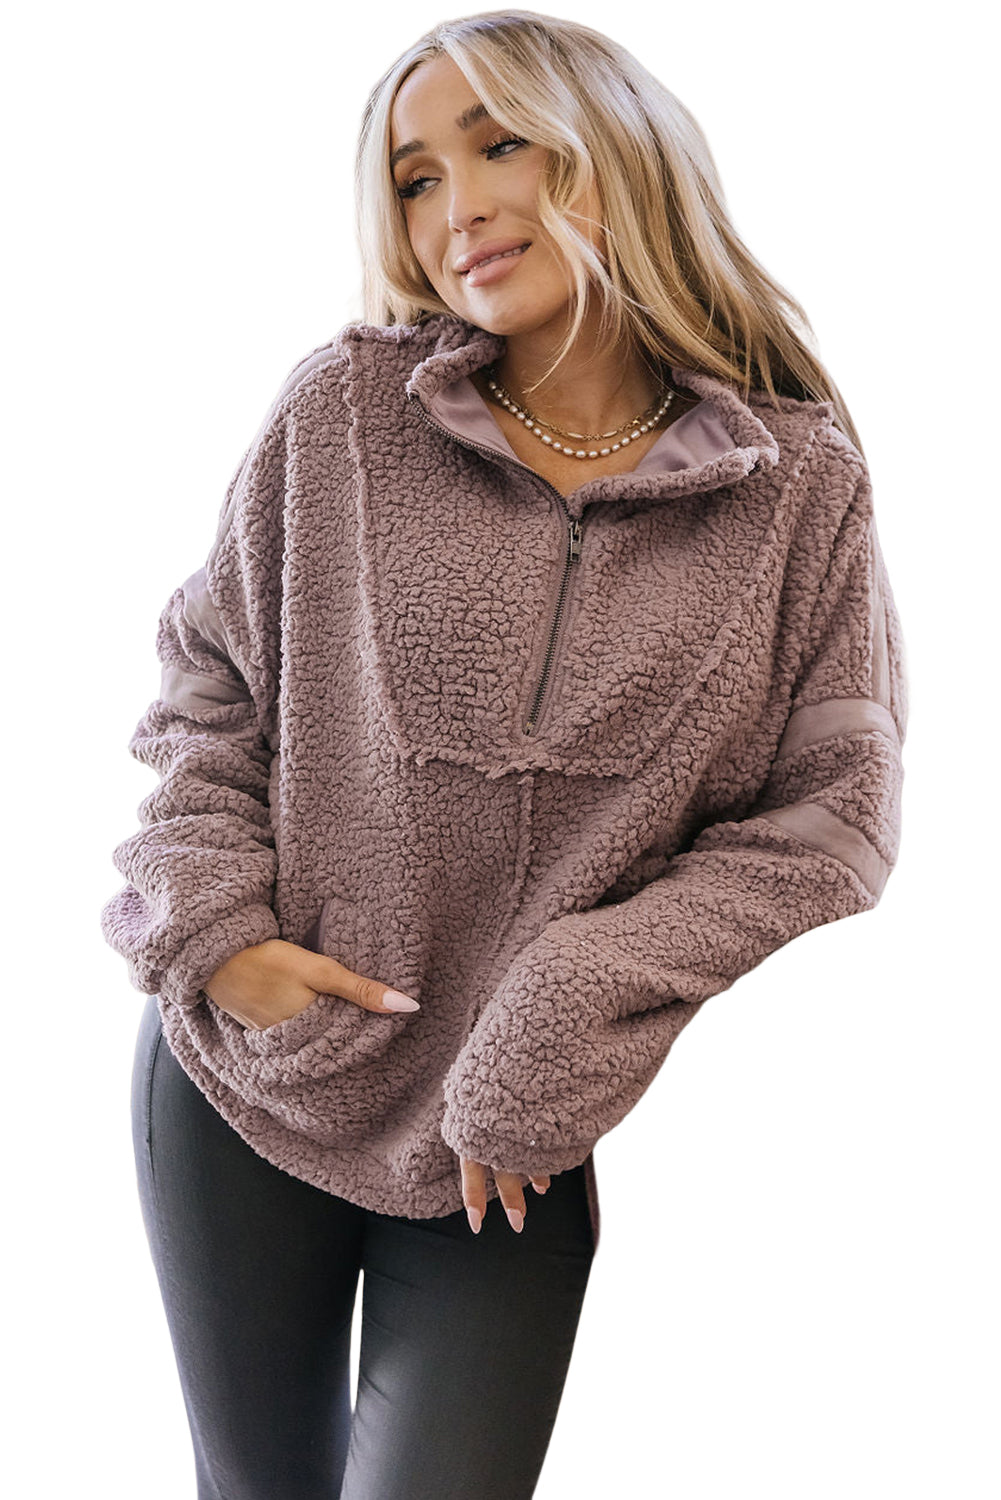 Flauschiges Pullover-Sweatshirt in Staubrosa mit Kragen und halbem Reißverschluss